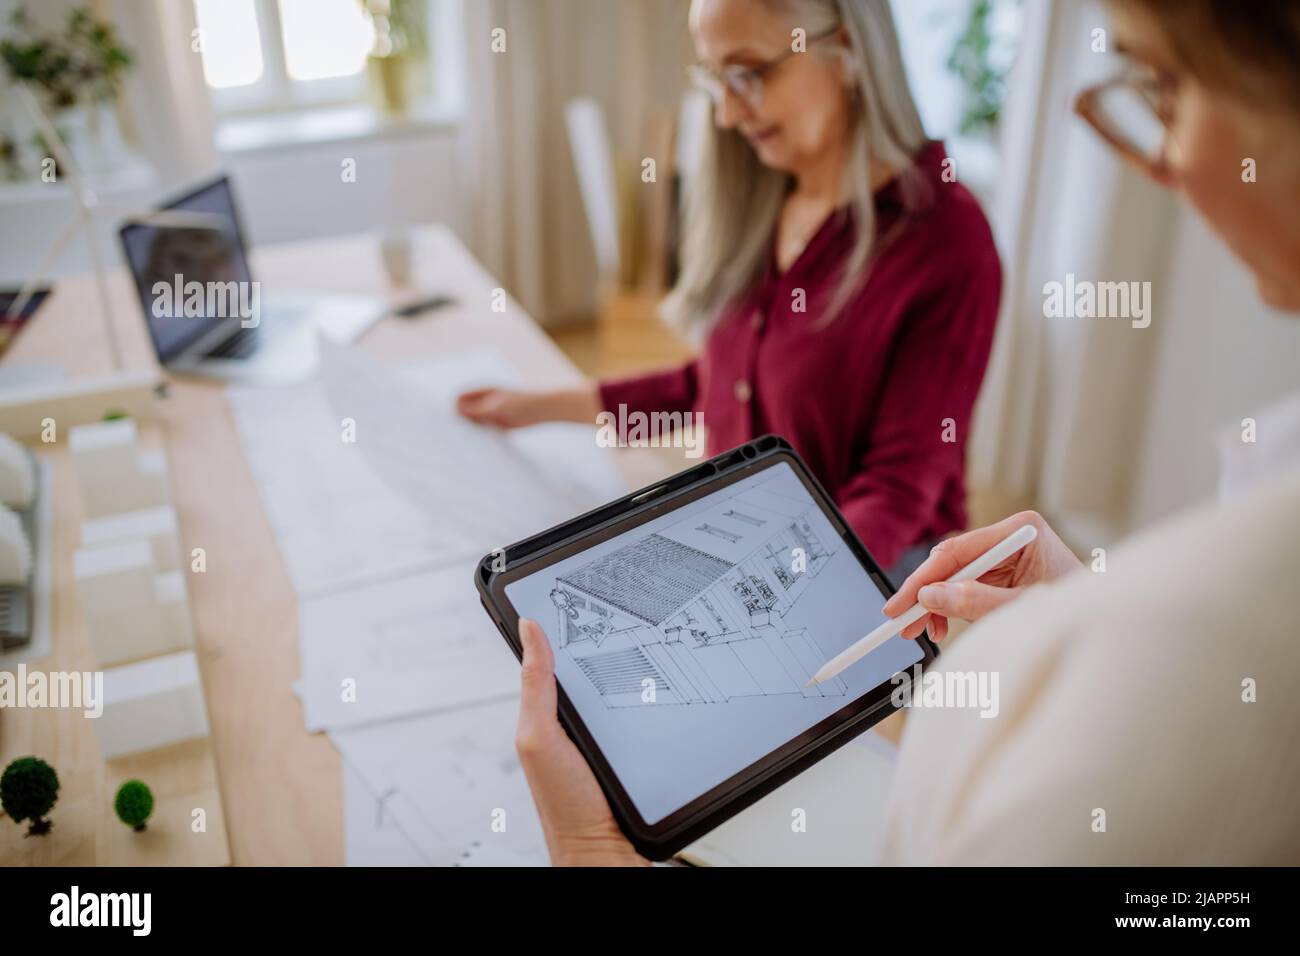 Mujeres maduras eco arquitectos con planos que trabajan juntos en la tableta en la oficina. Foto de stock